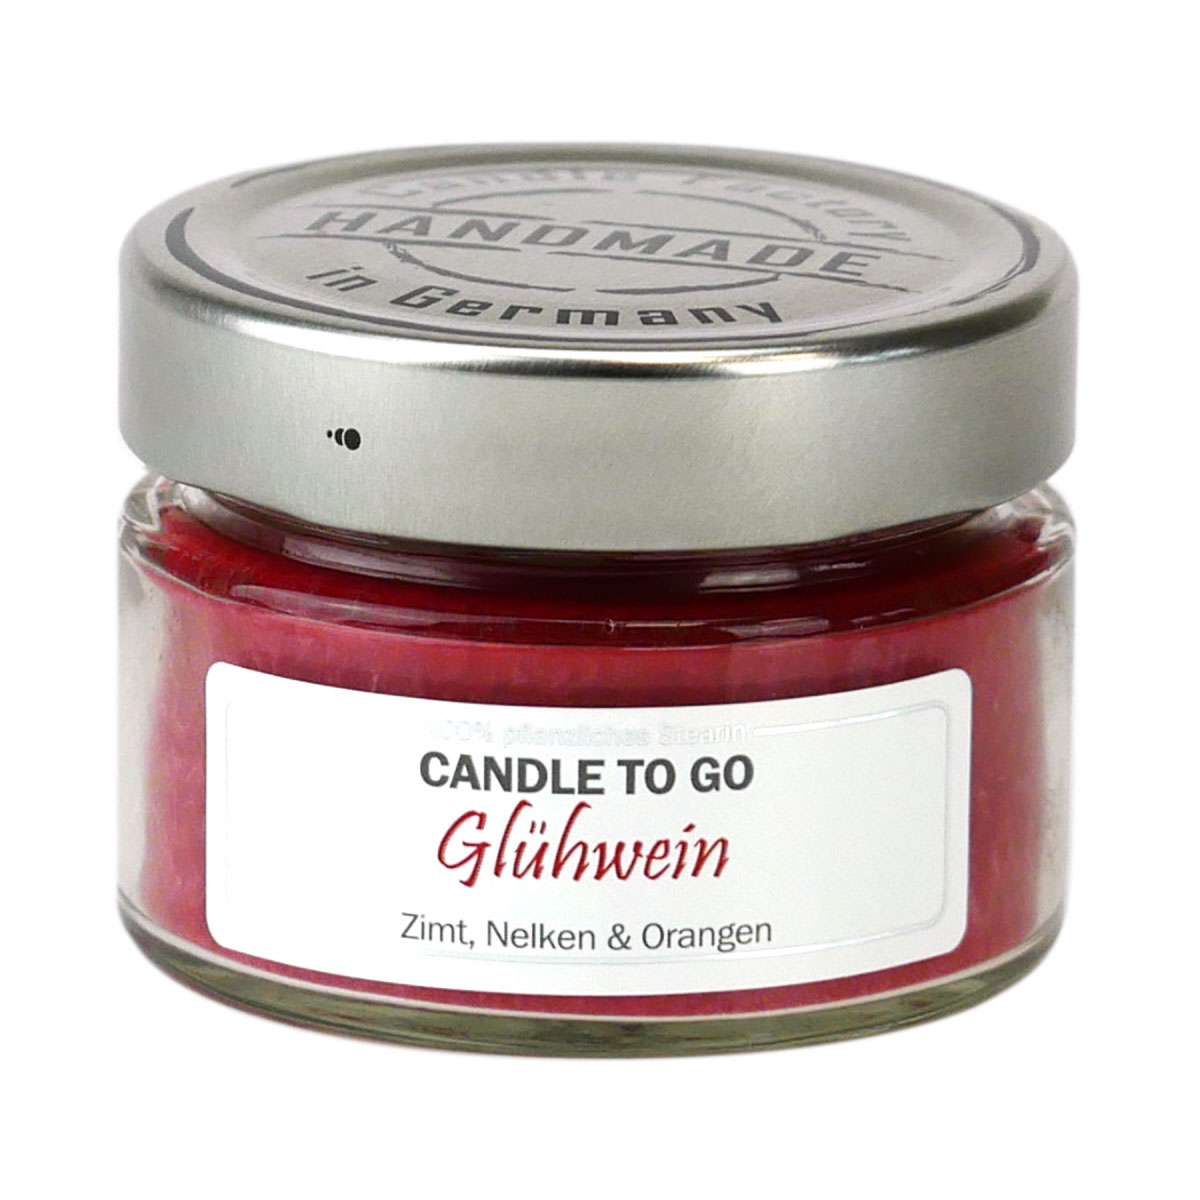 Glühwein - Candle to Go Duftkerze von Candle Factory